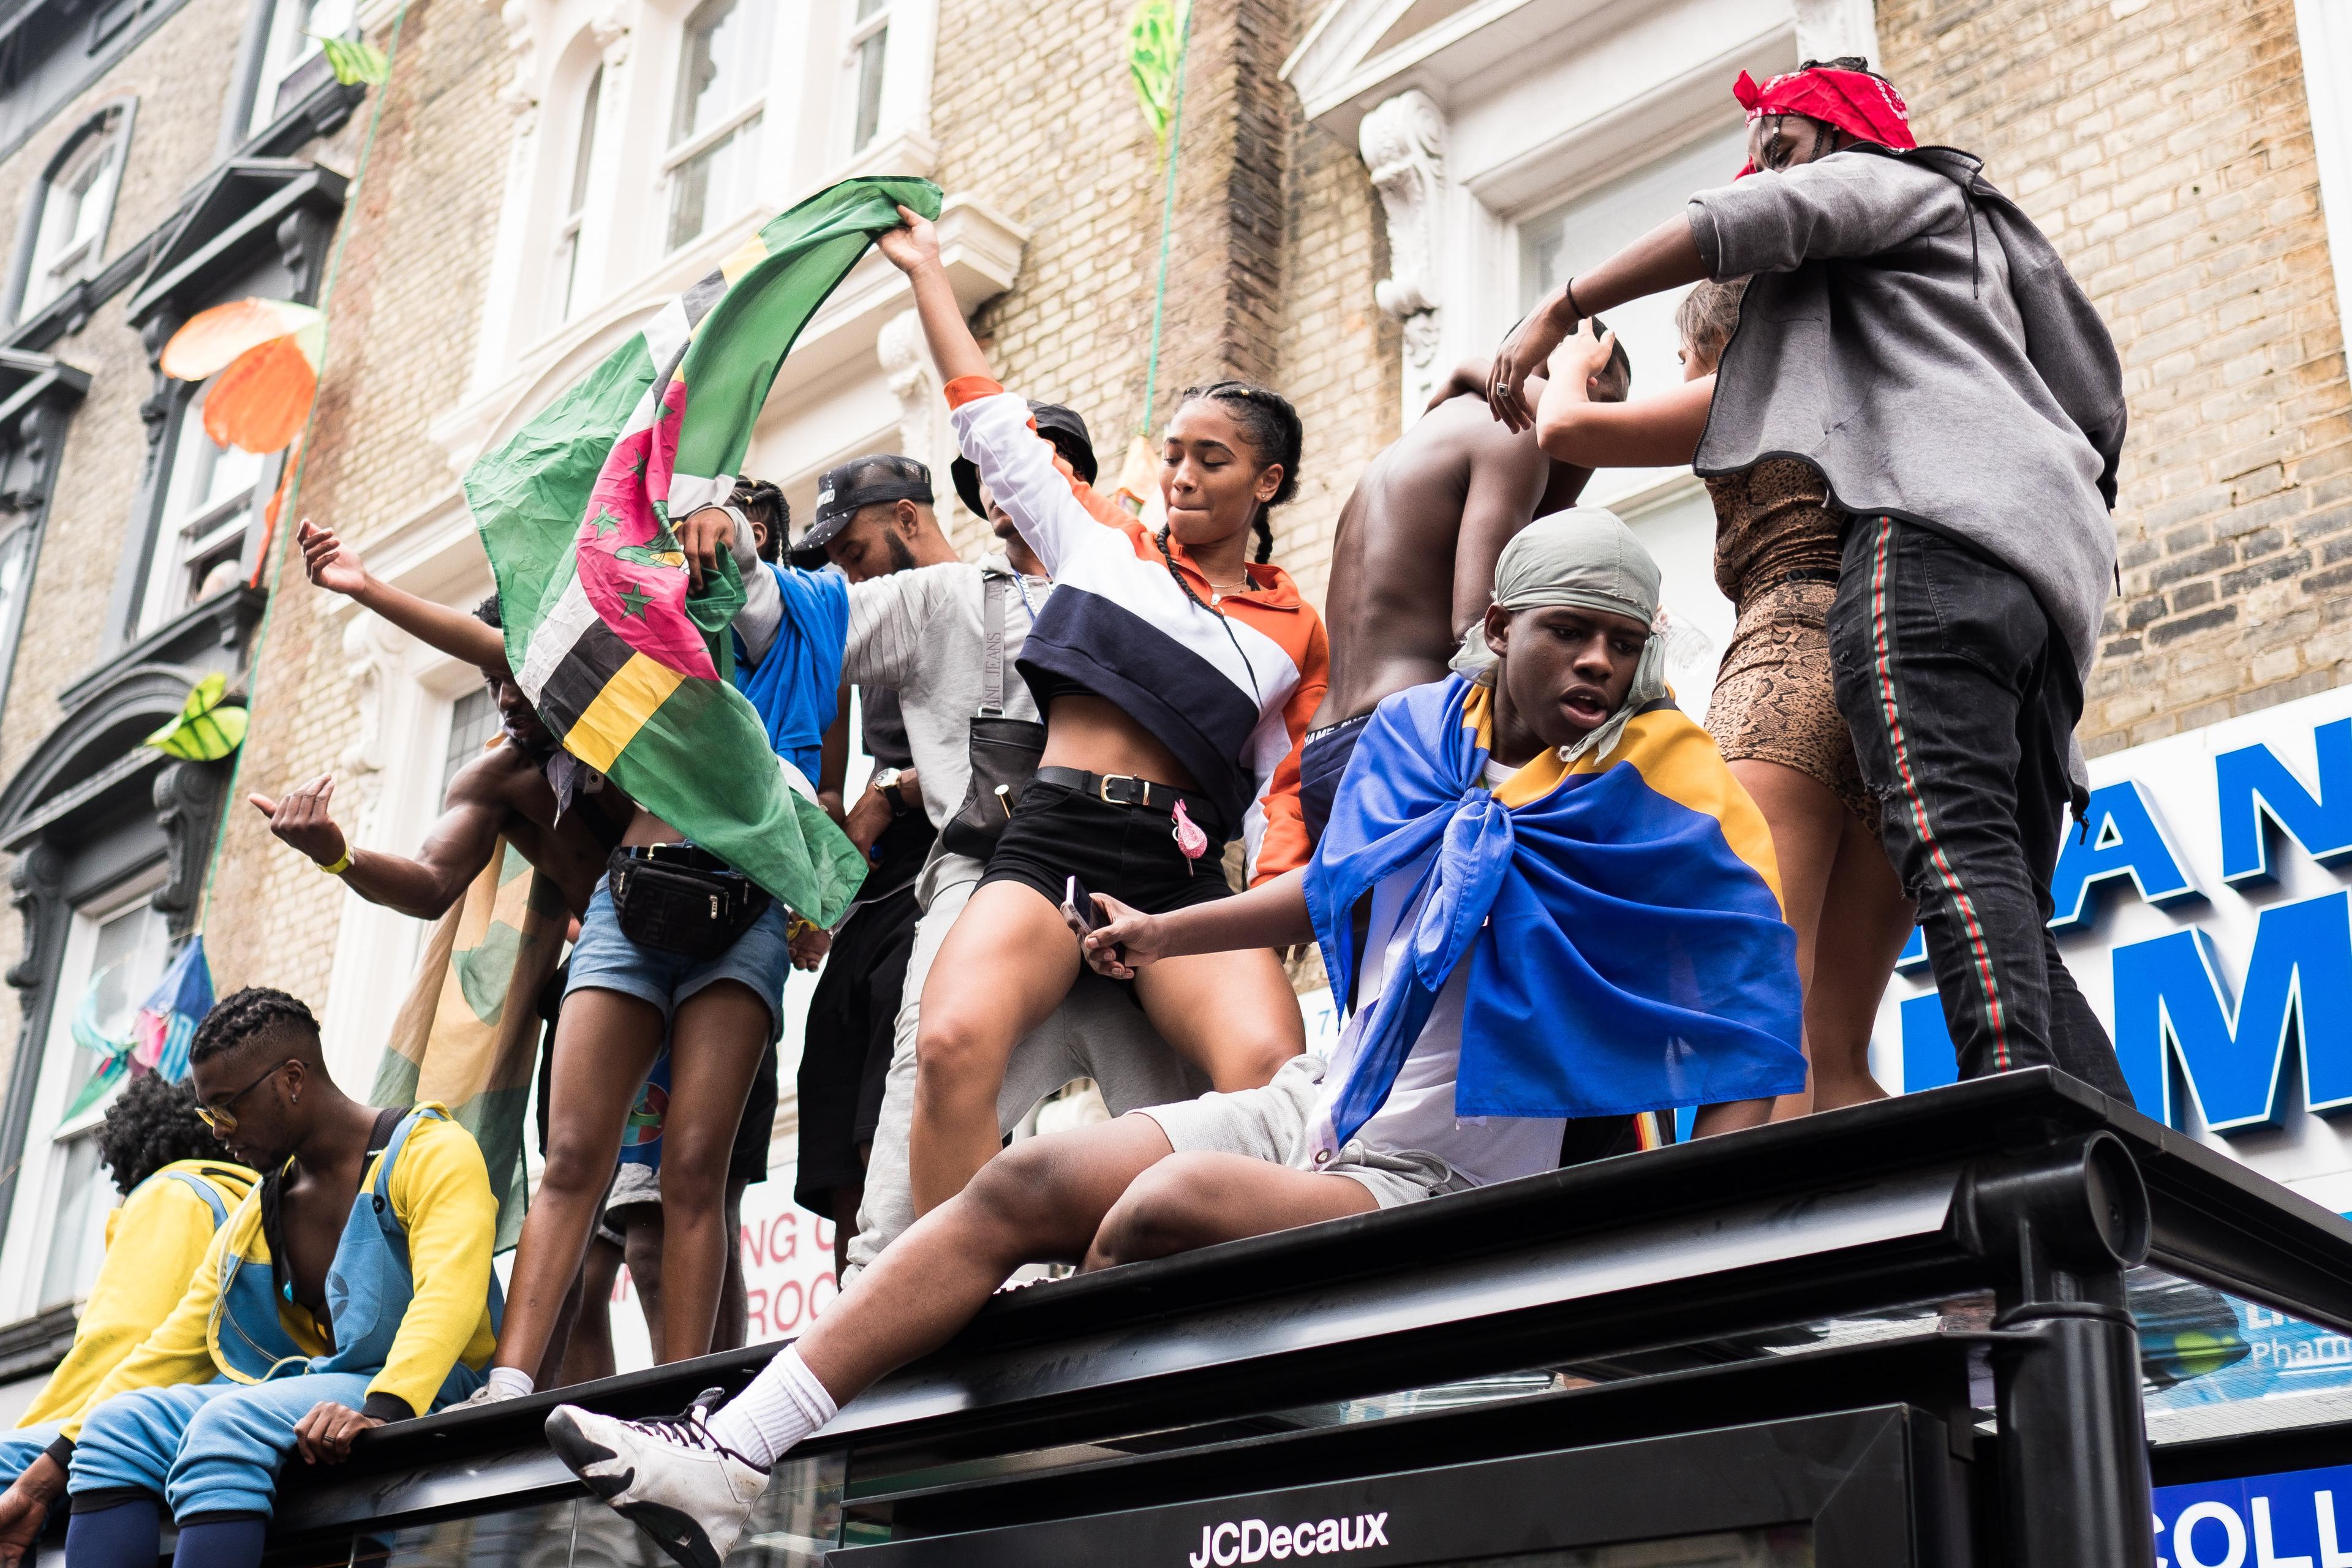 Die Menschen feiern den Notting Hill Carnival auf der Straße